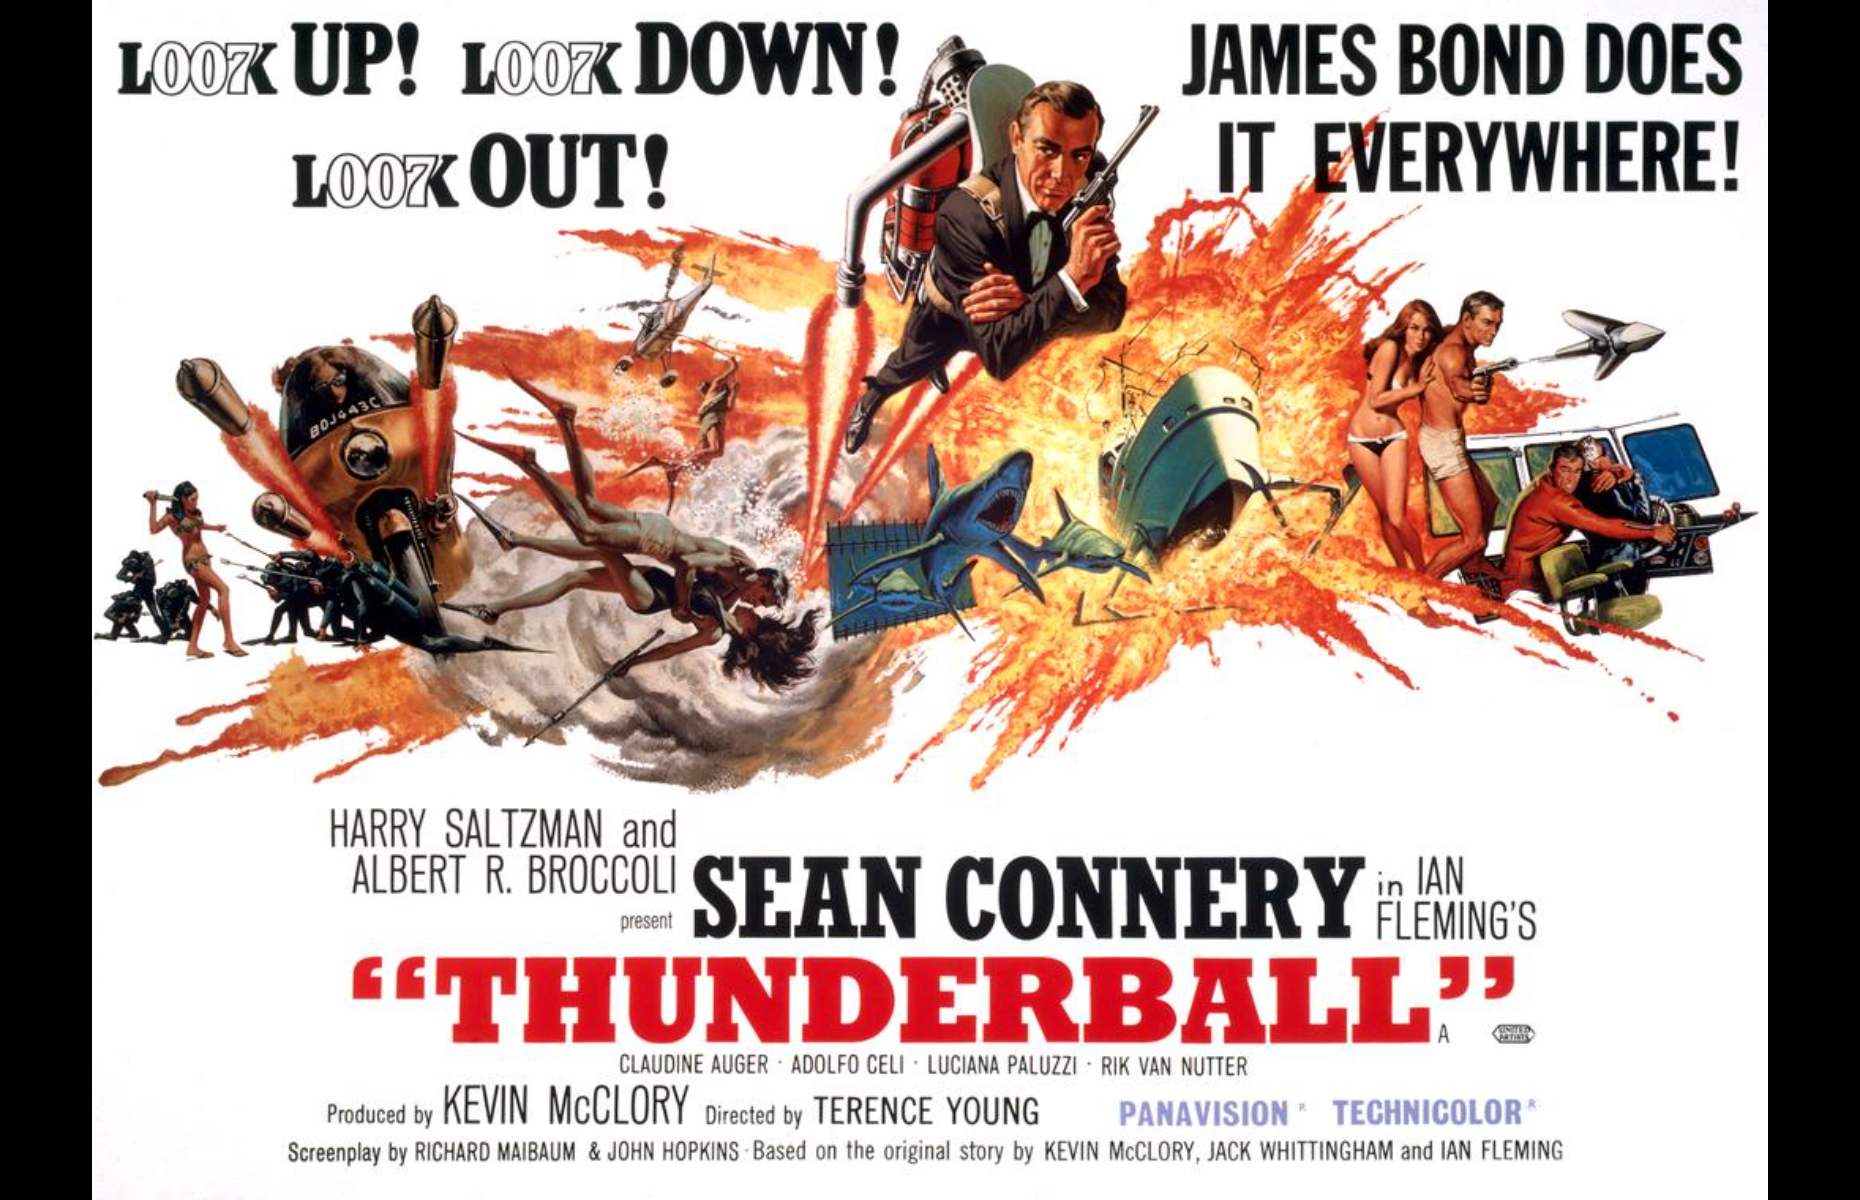 2nd: Thunderball, $1.4 billion (£1.1bn)